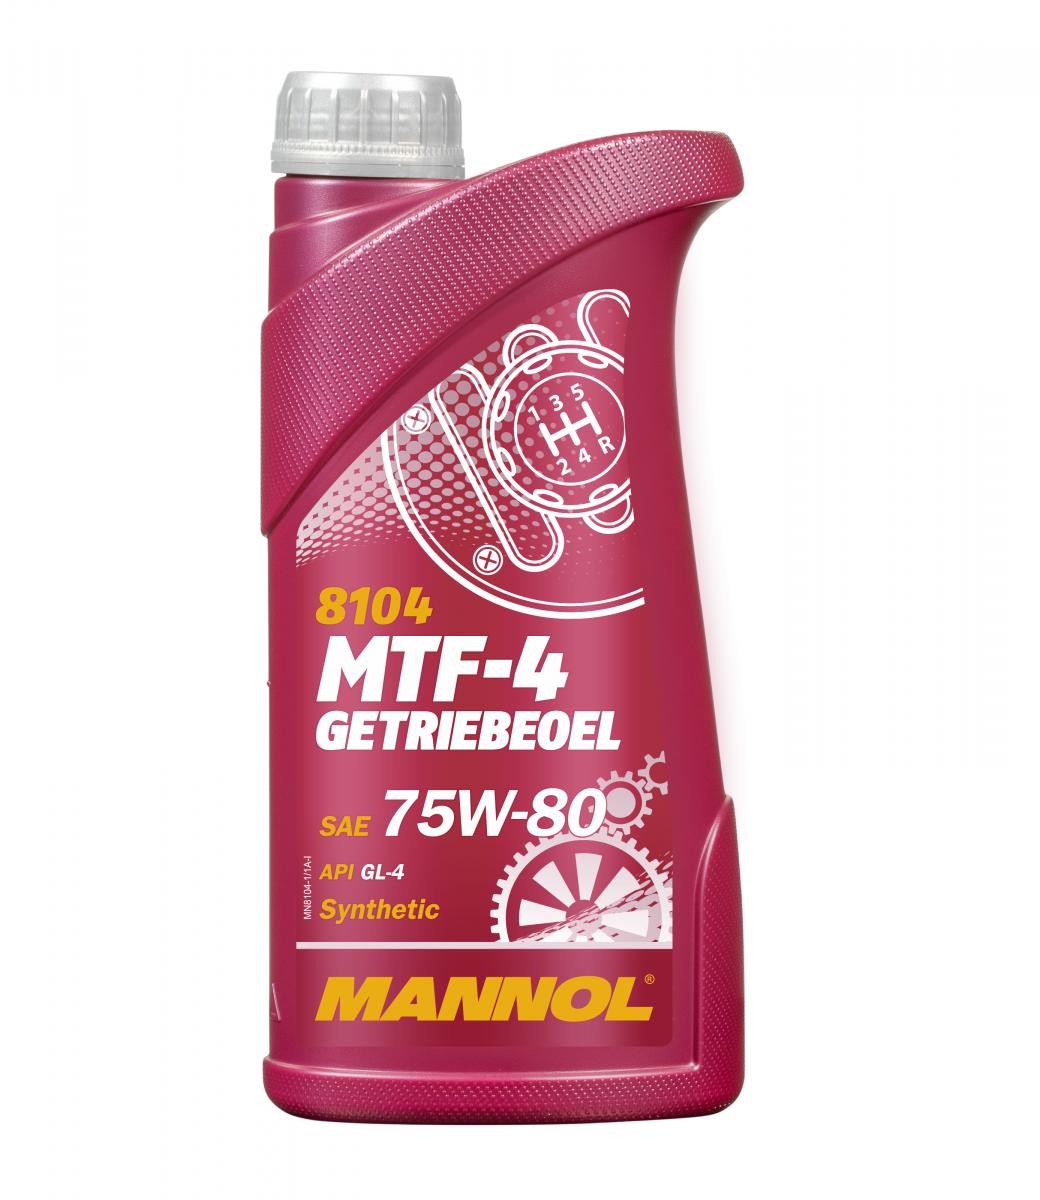 MANNOL MTF-4, GL-4 MN8104-1 KSR MOTO Getriebeöl Motorrad zum günstigen Preis